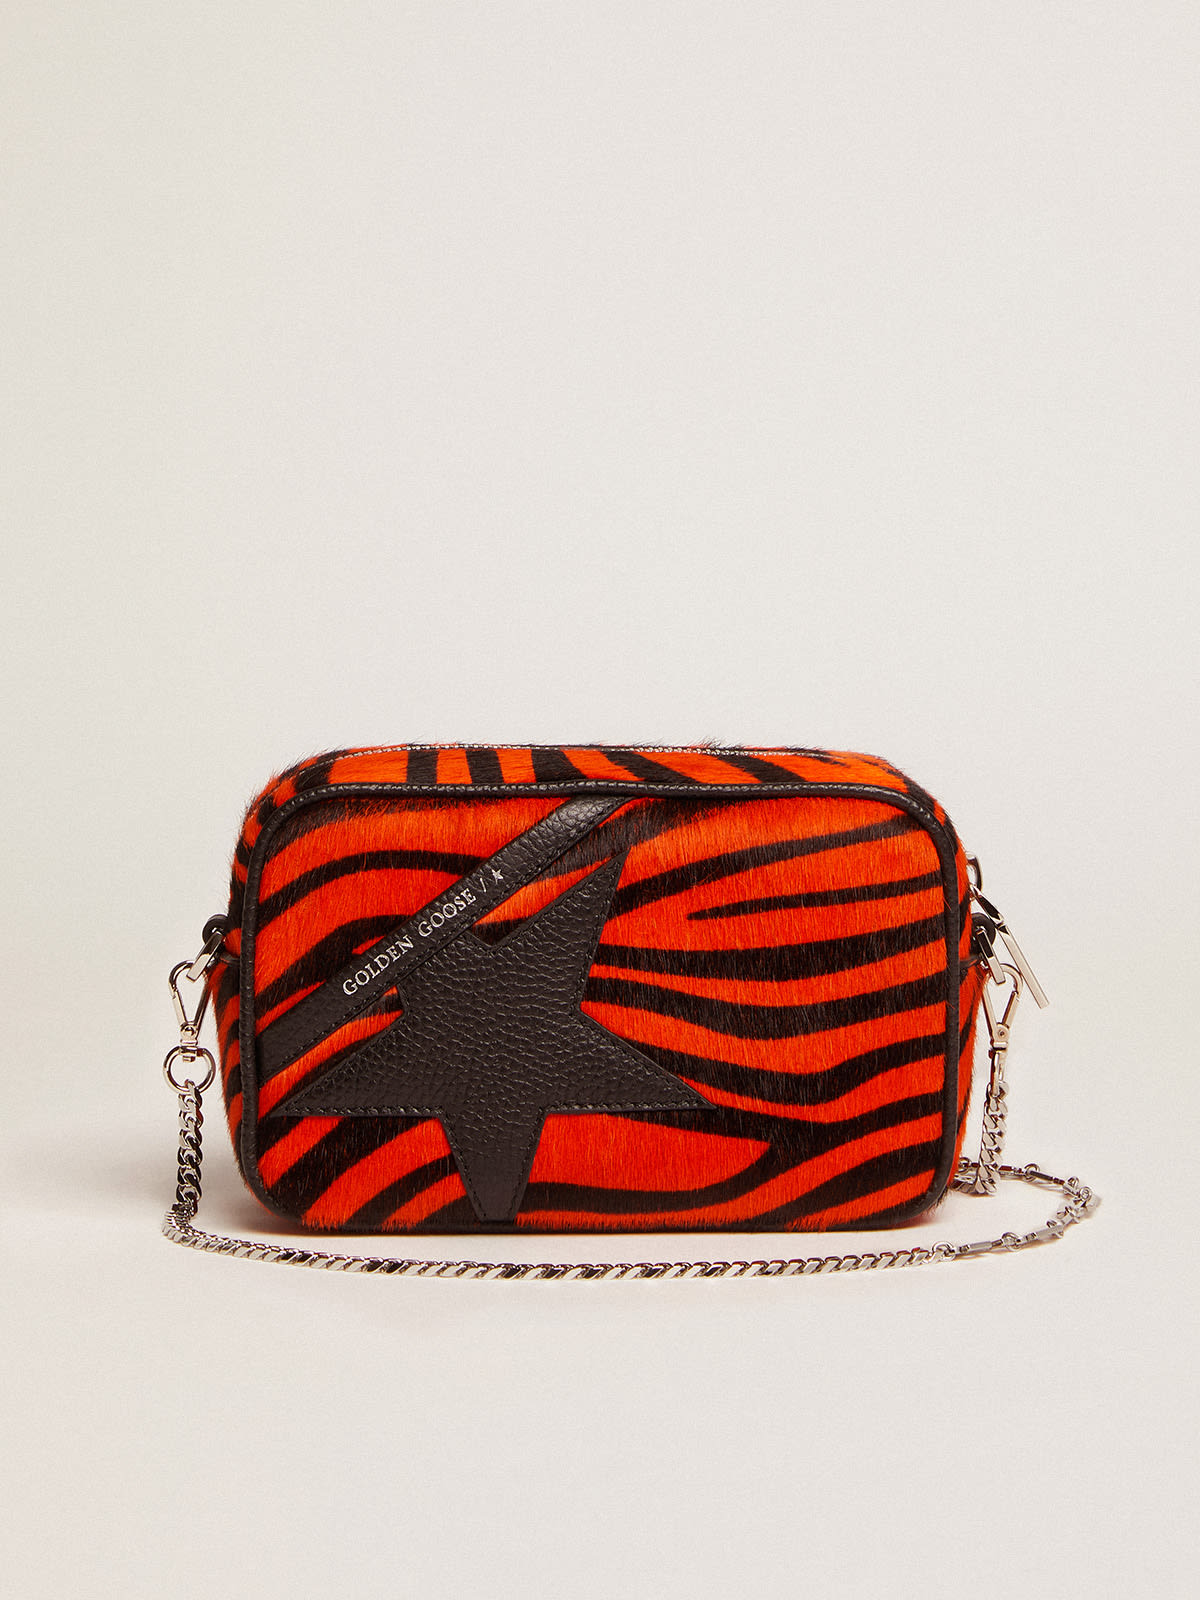 Golden Goose - Borsa Mini Star Bag in cavallino tigrato color arancione e stella in pelle nera in 